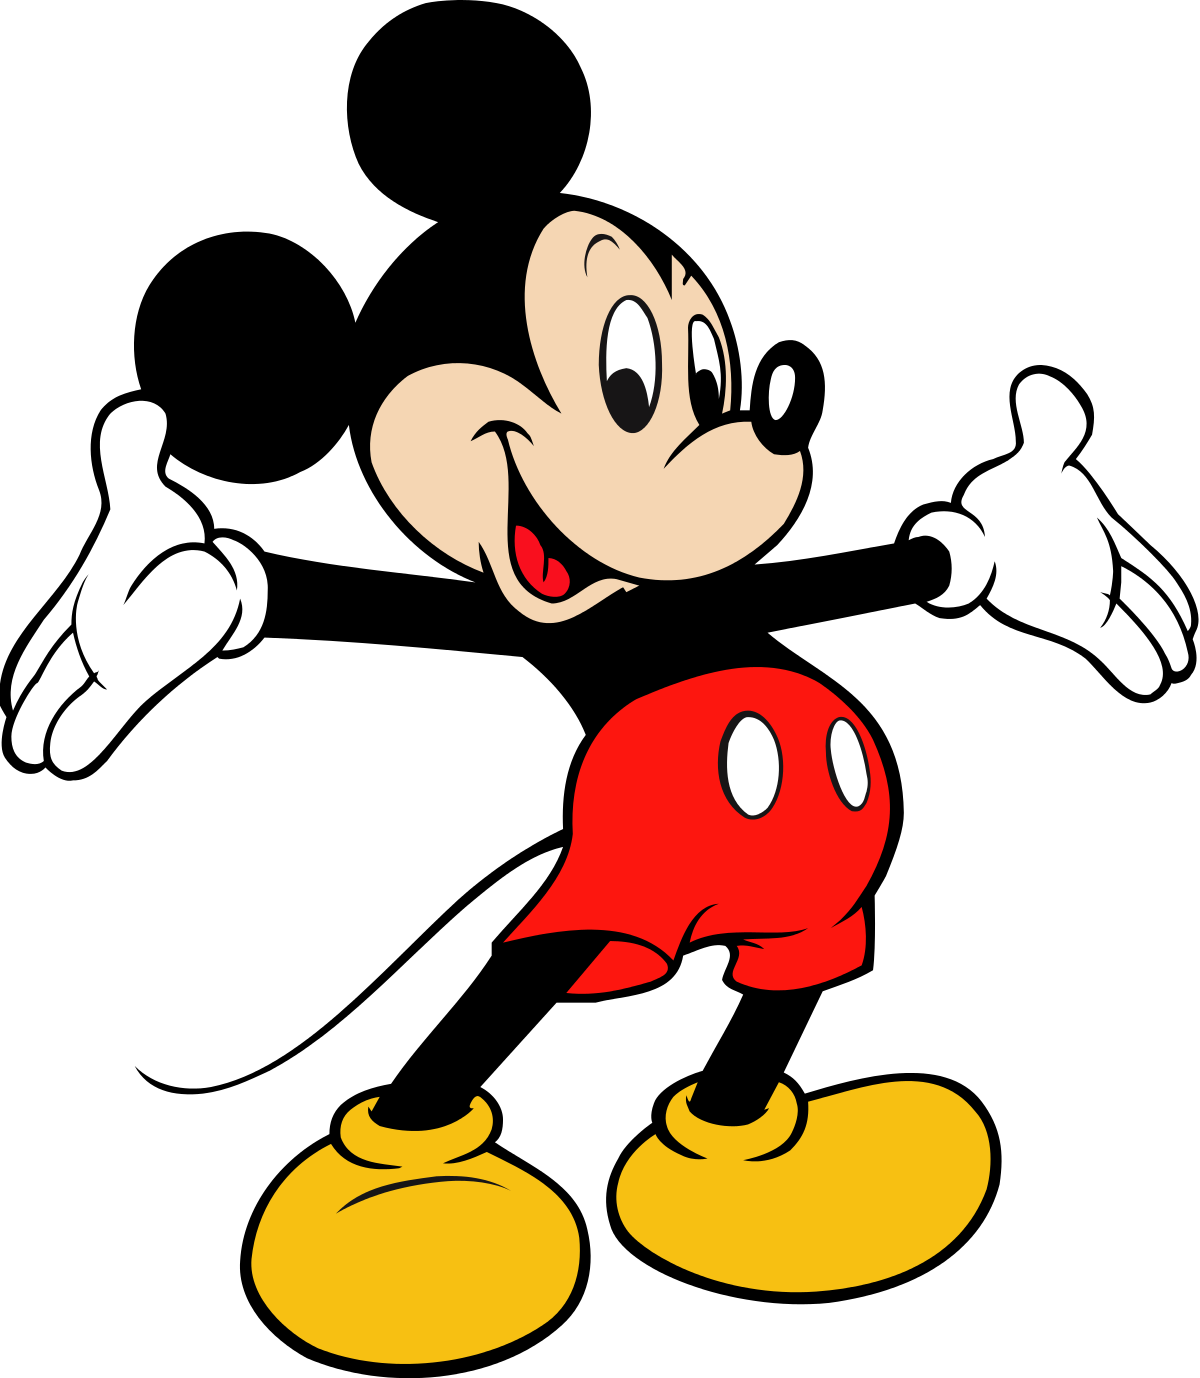 Gambar Animasi Mickey Mouse - KibrisPDR